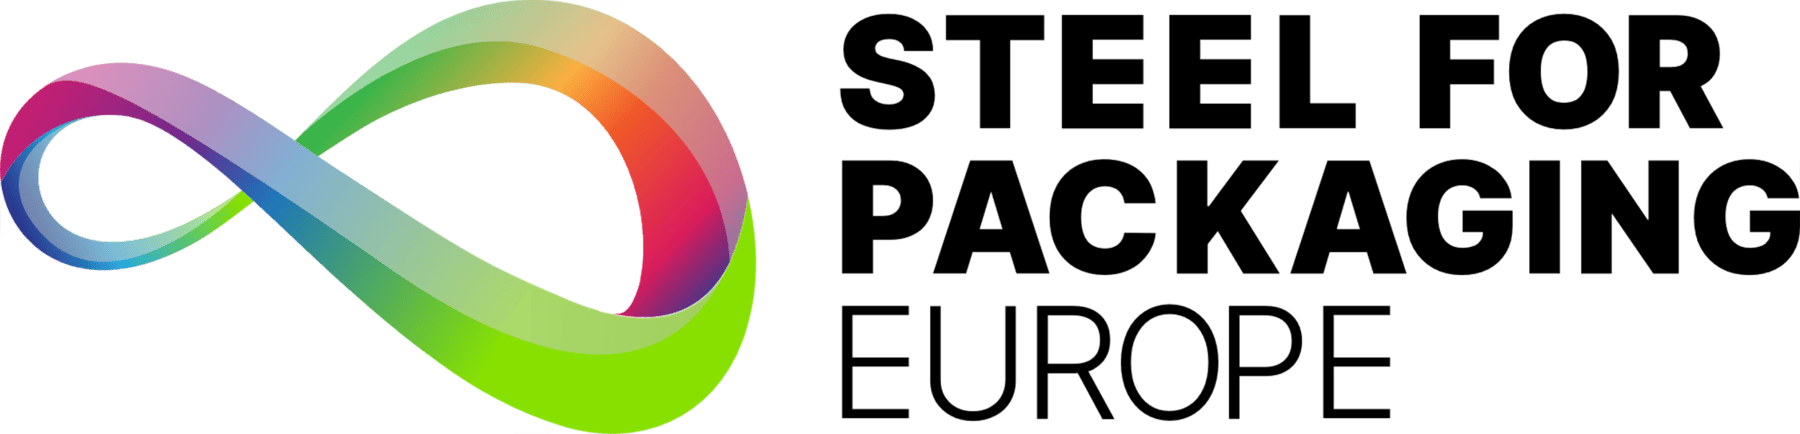 steel for packaging europe